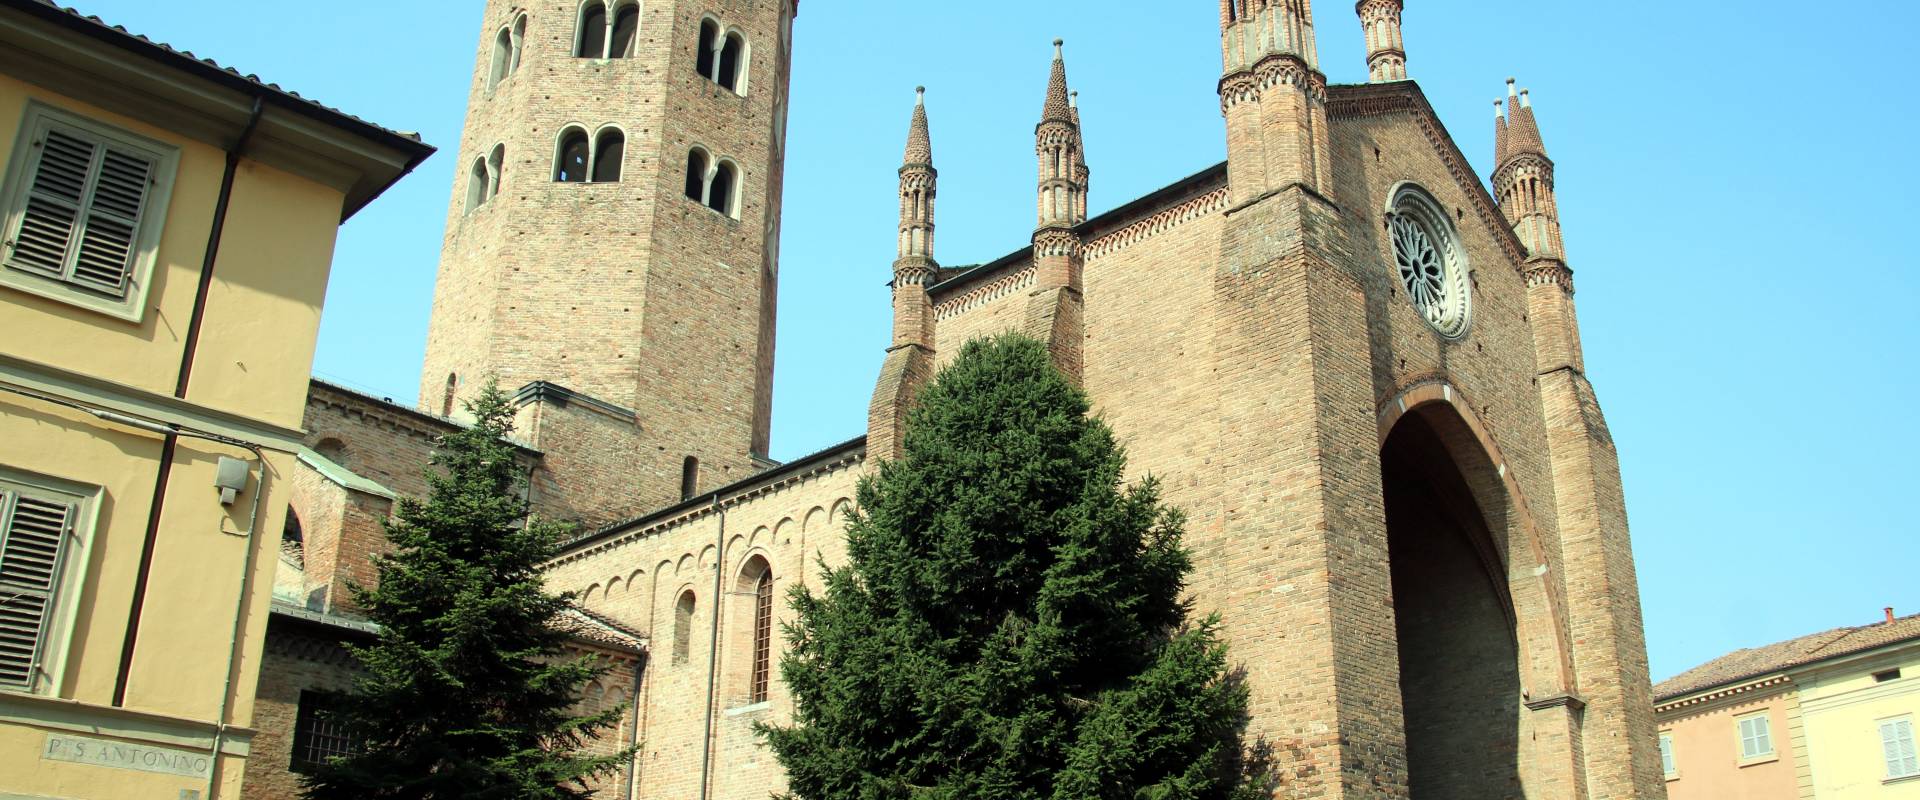 Basilica di Sant'Antonino (Piacenza), esterno 02 photo by Mongolo1984